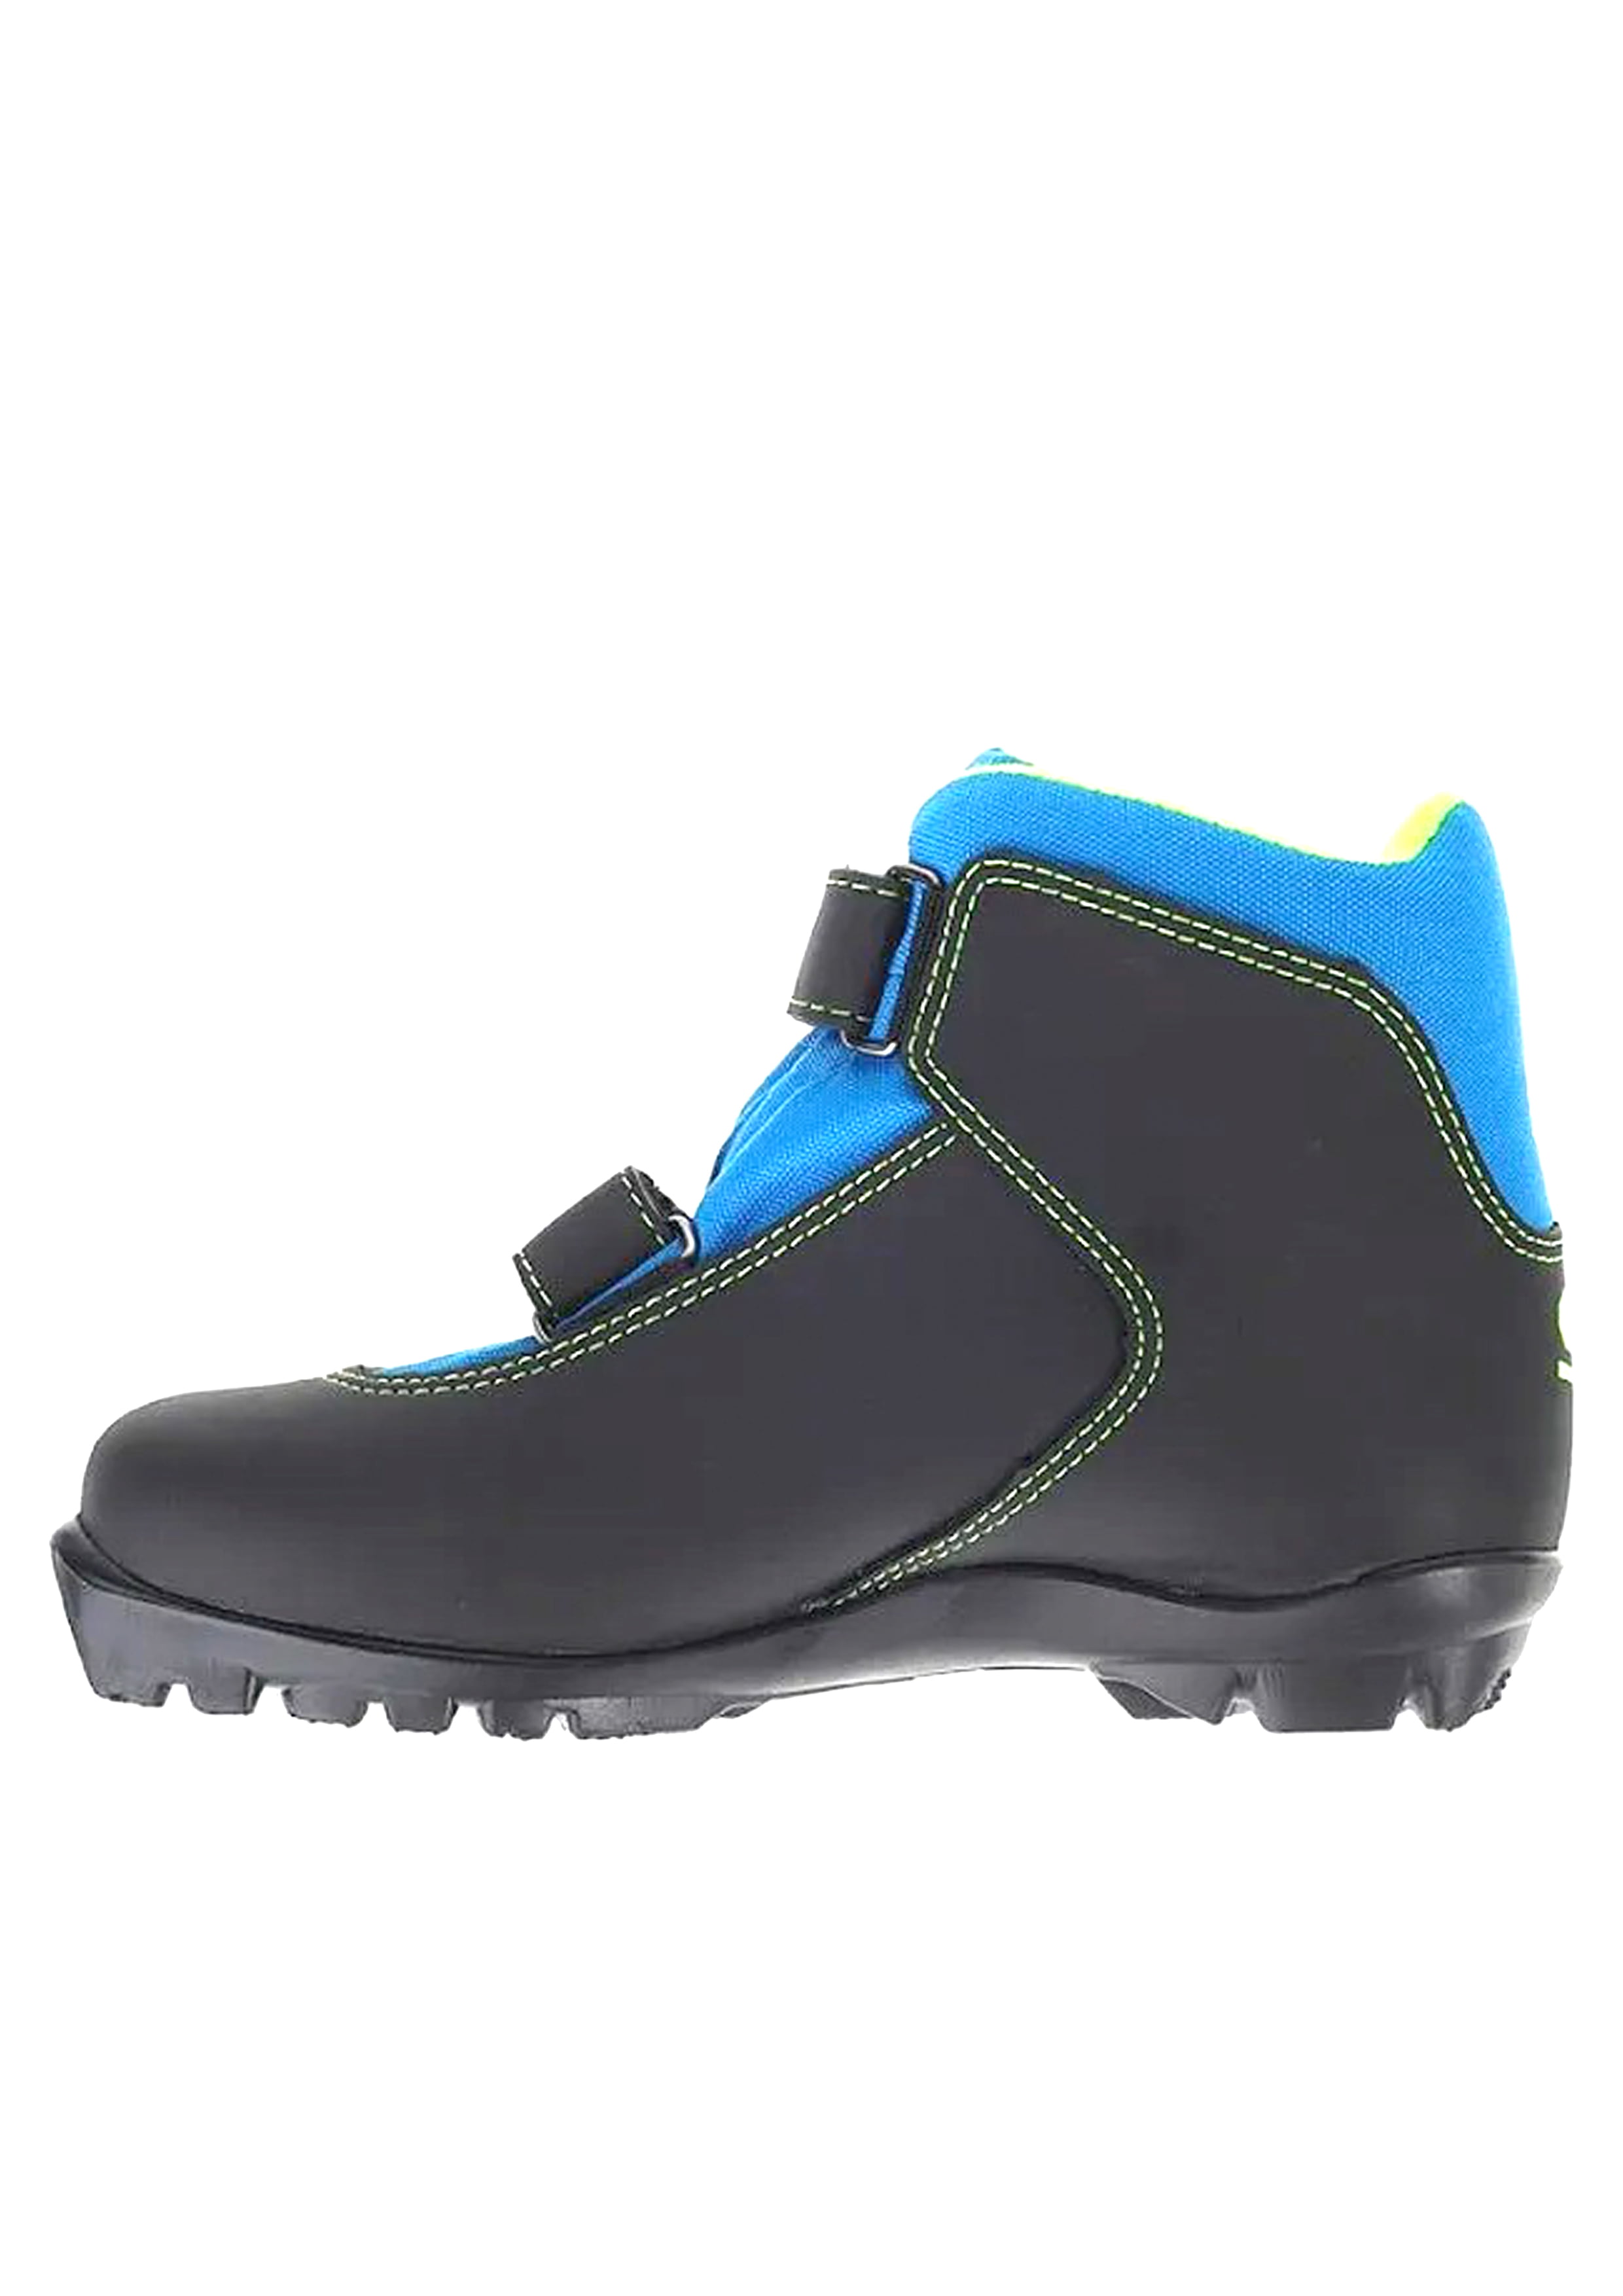 Ботинки лыжные NNN TREK Snowrock1 черный